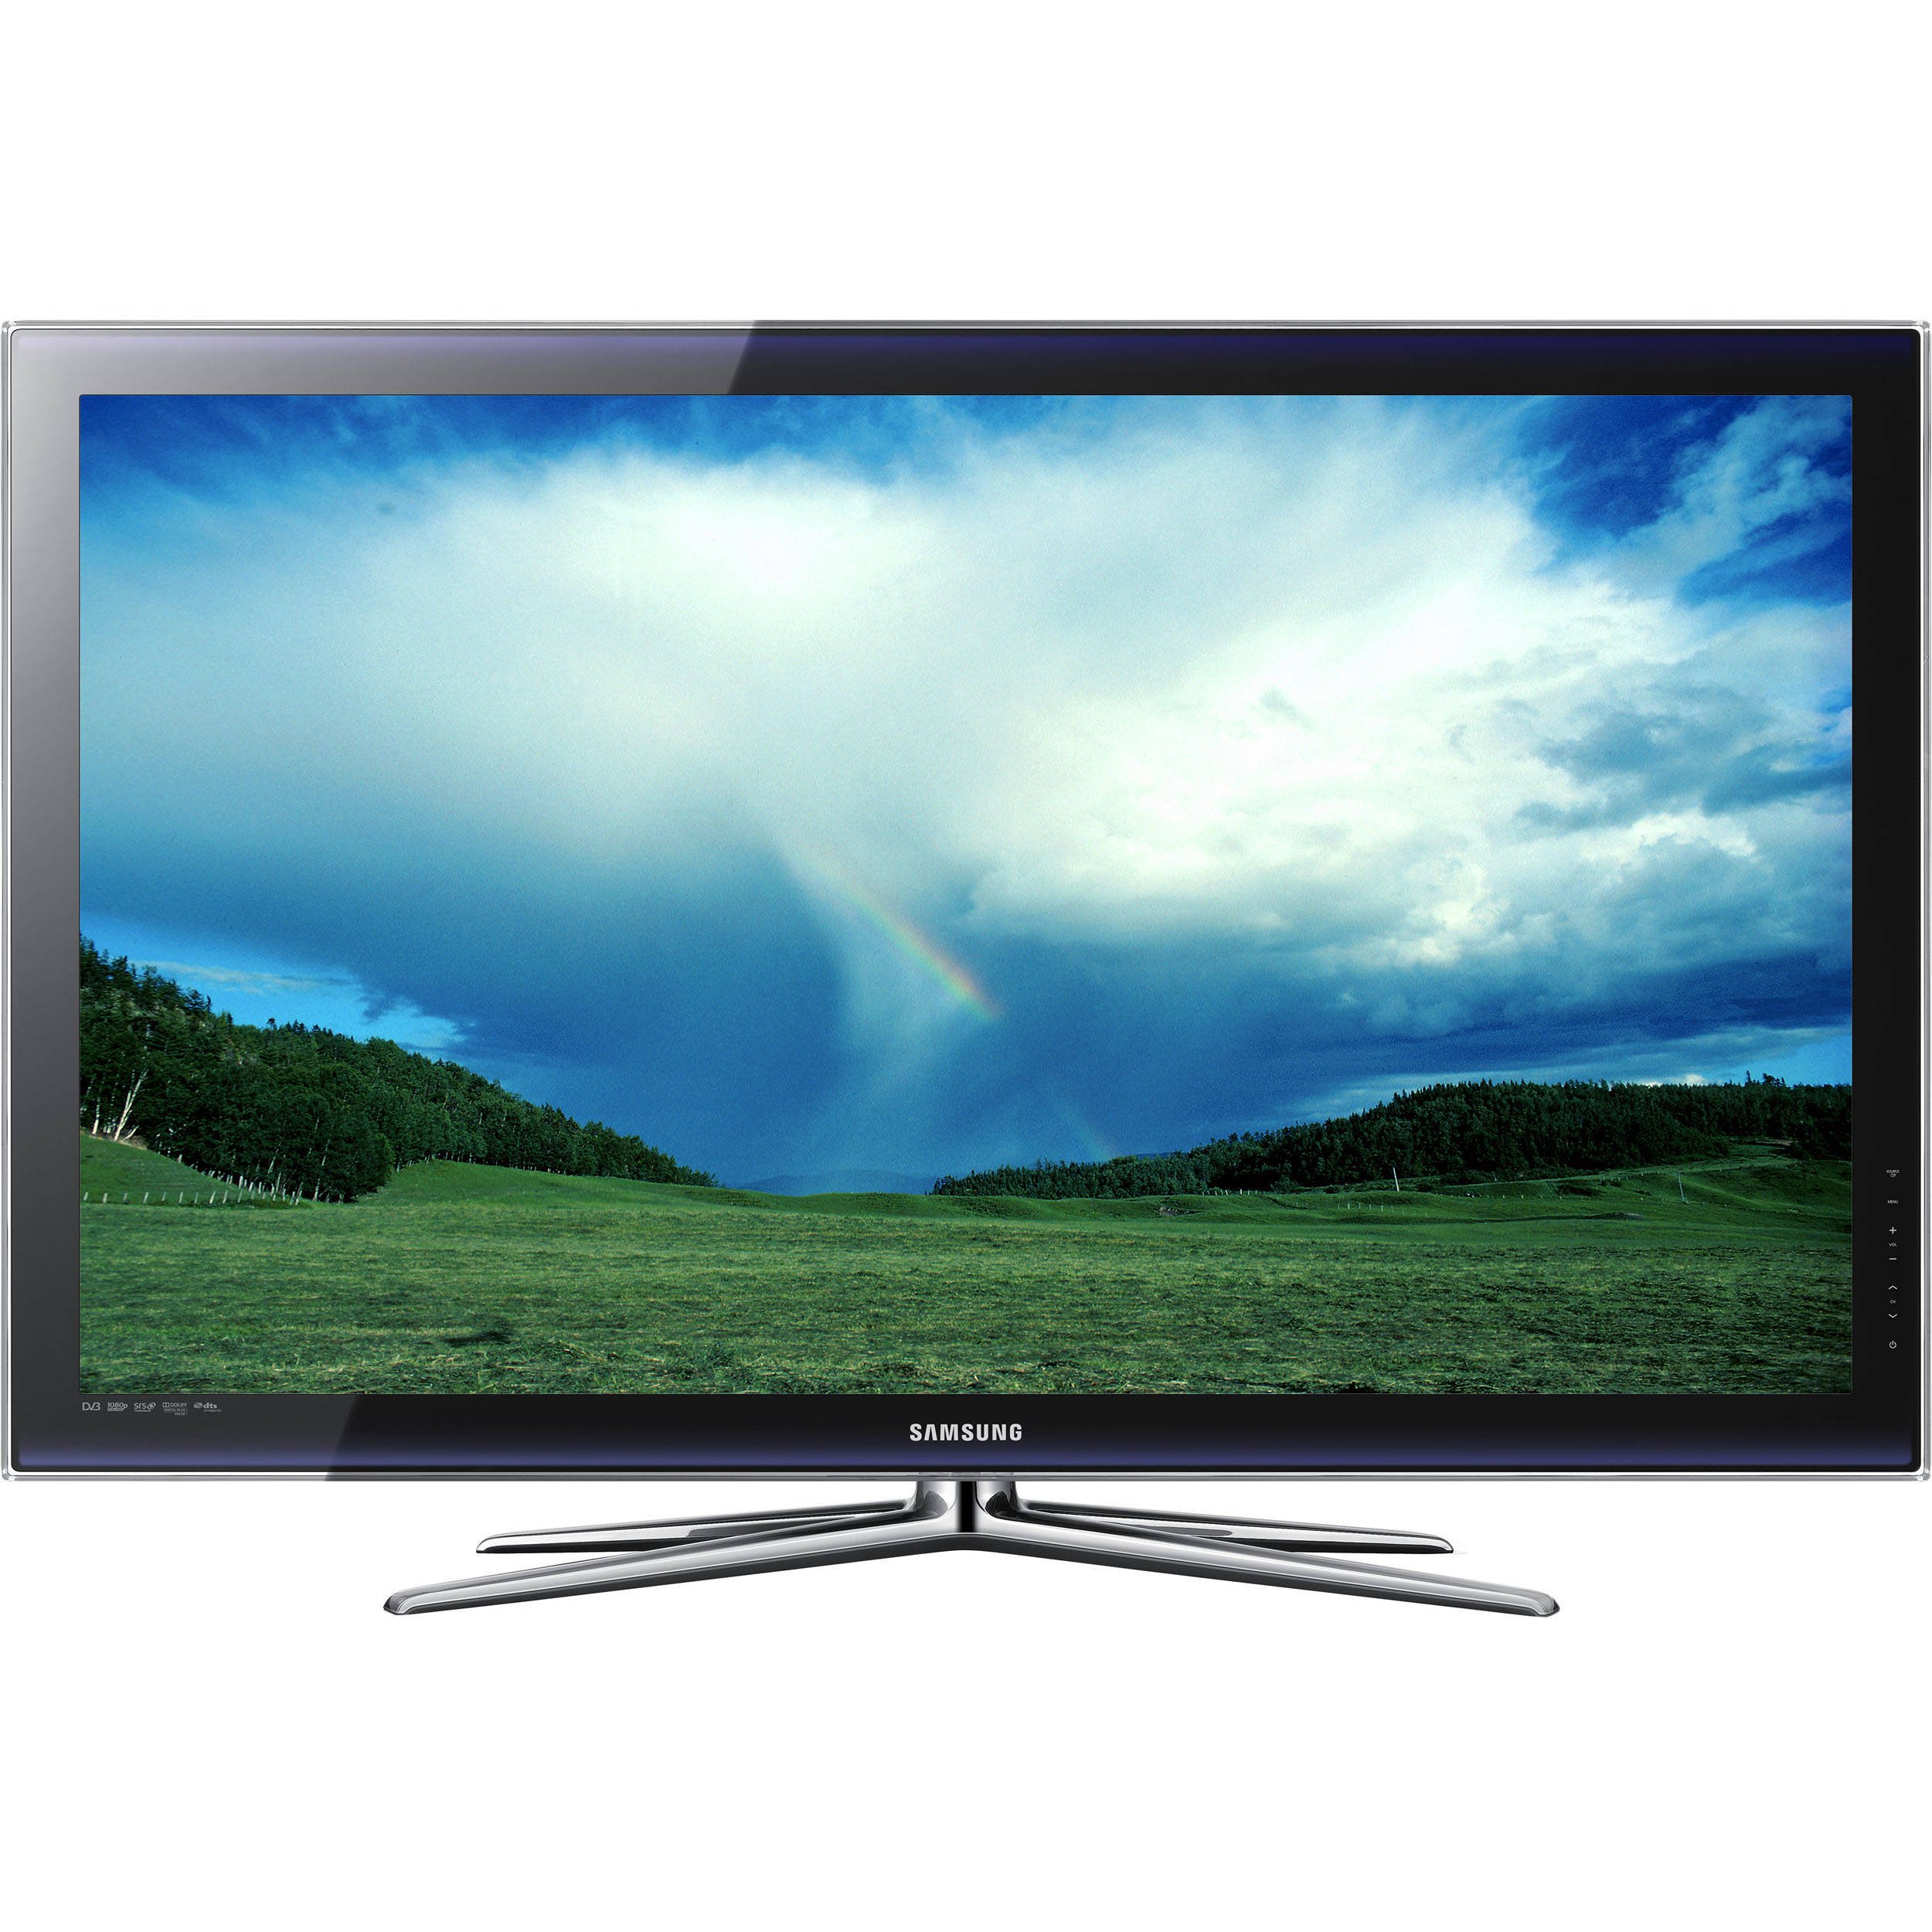 Купить телевизор в омске недорого. Samsung 50 плазма. Samsung TV плазма. Samsung 2013 телевизор плазма.